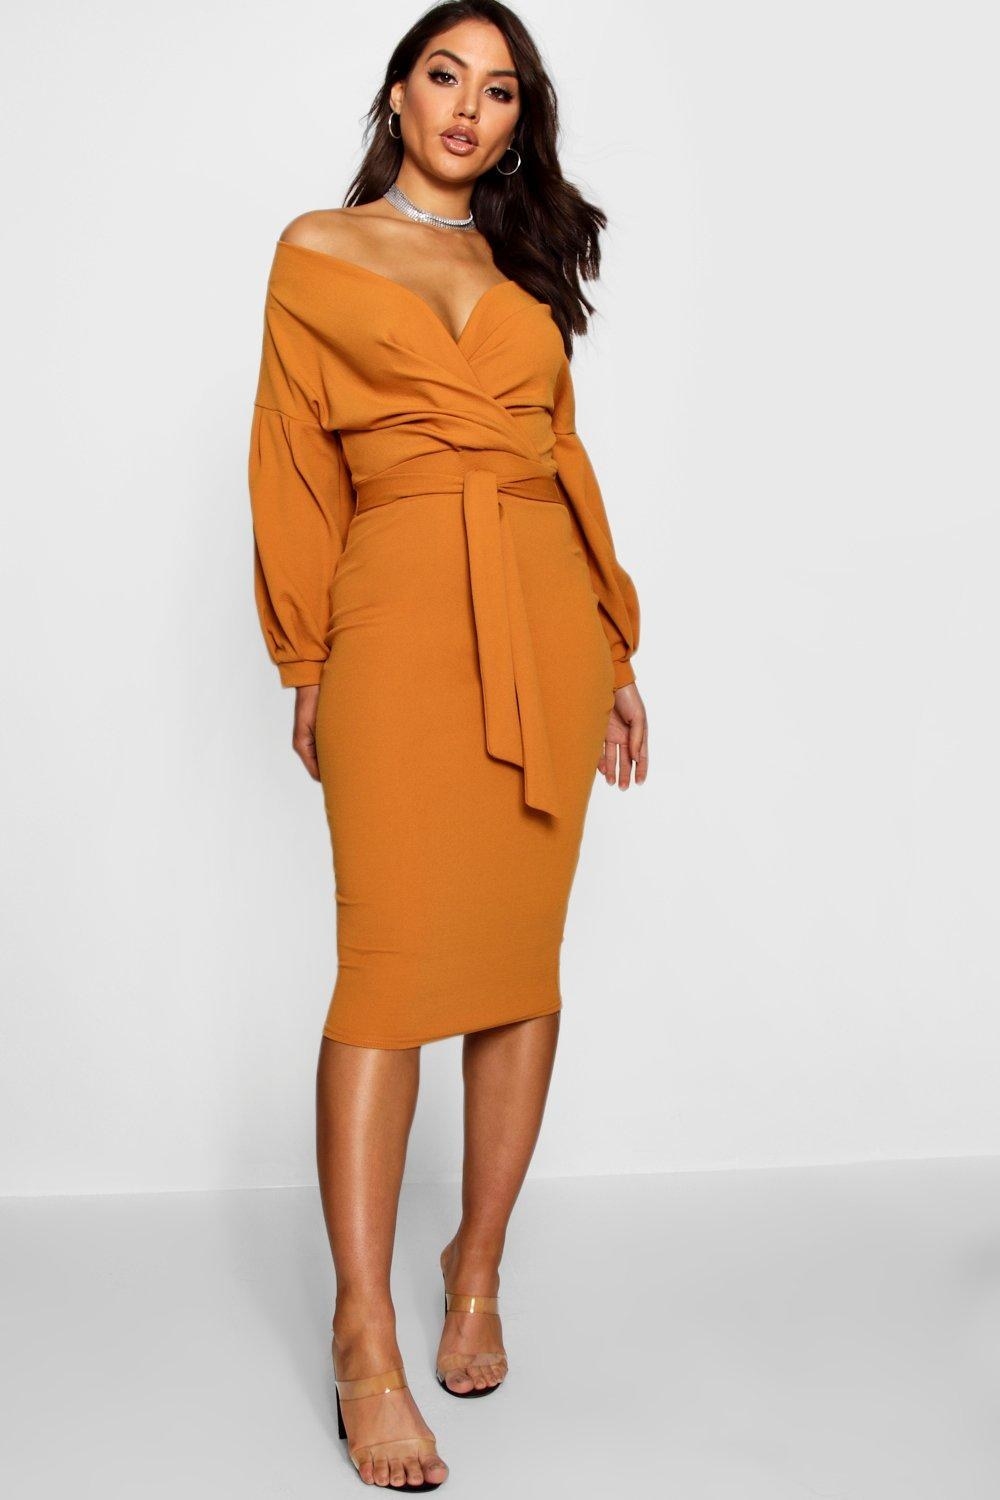 Model wearing orange dress